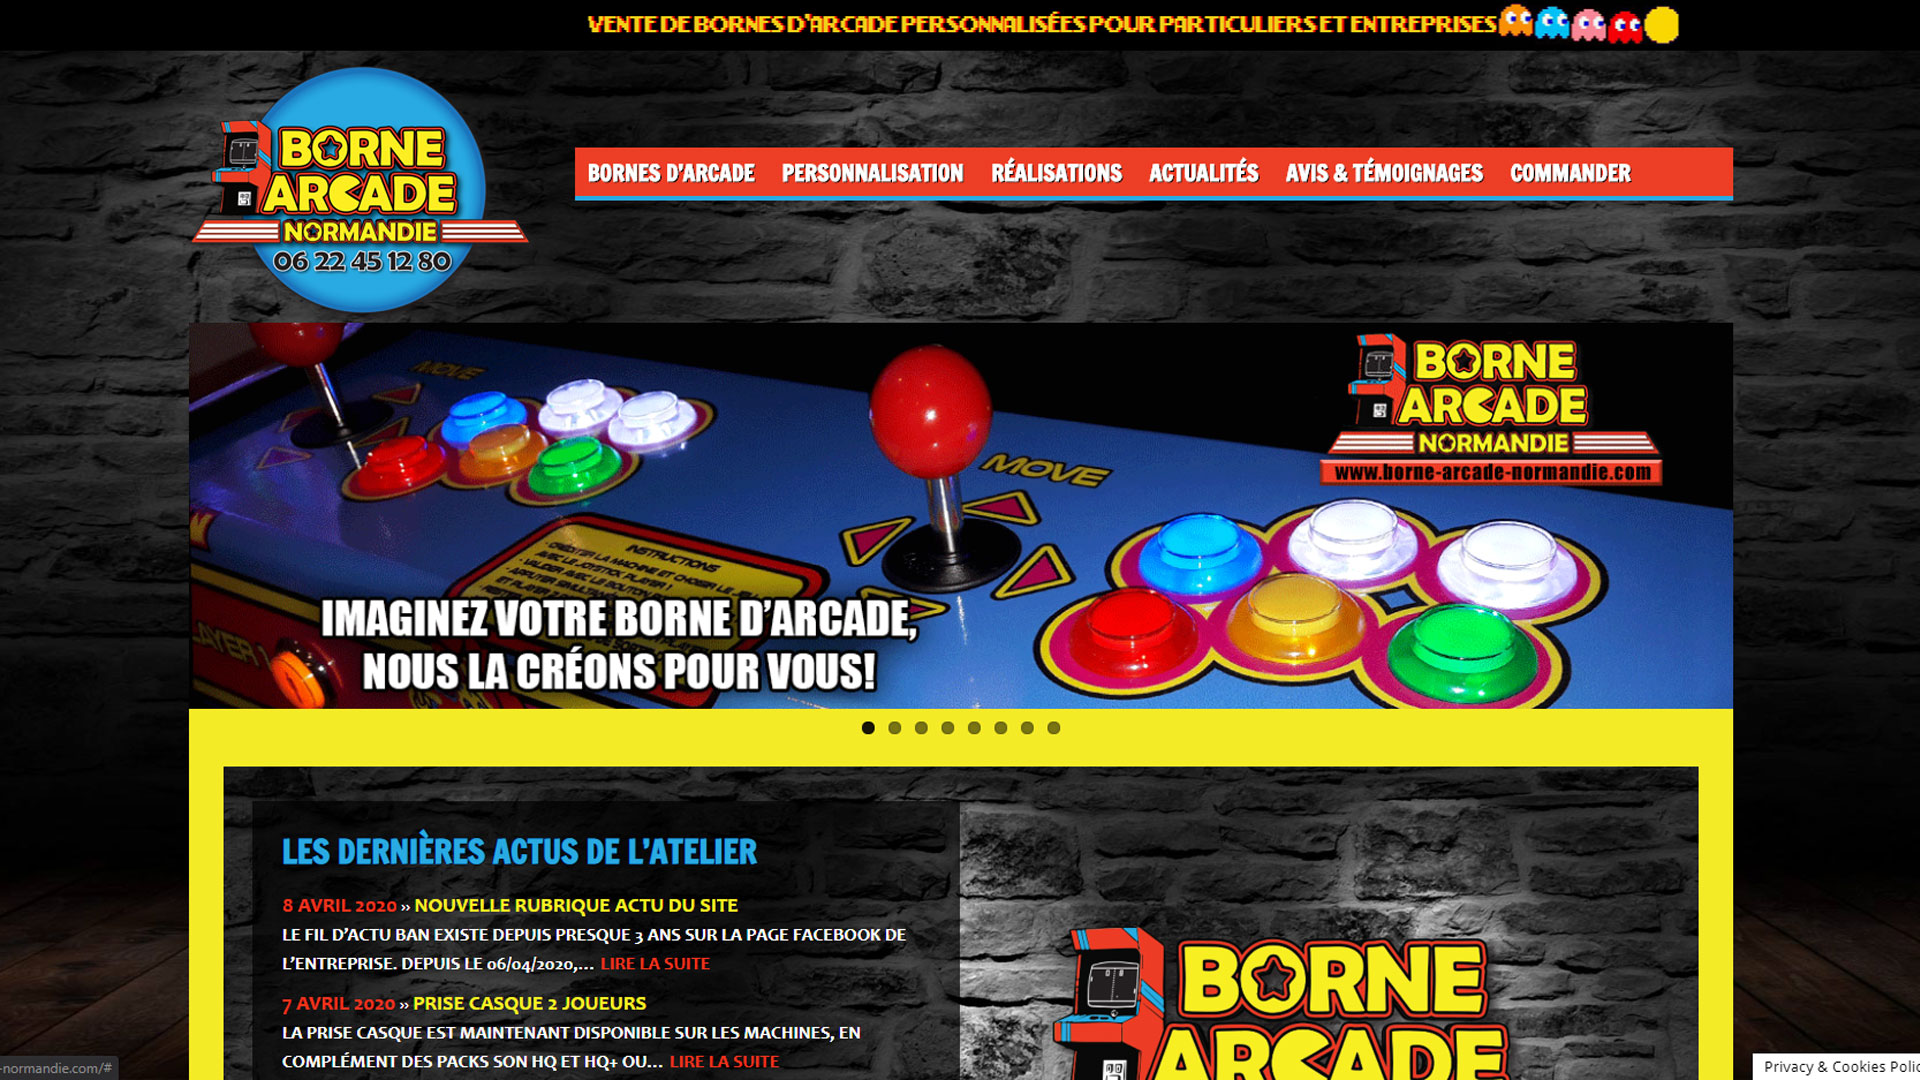 (c) Borne-arcade-normandie.com